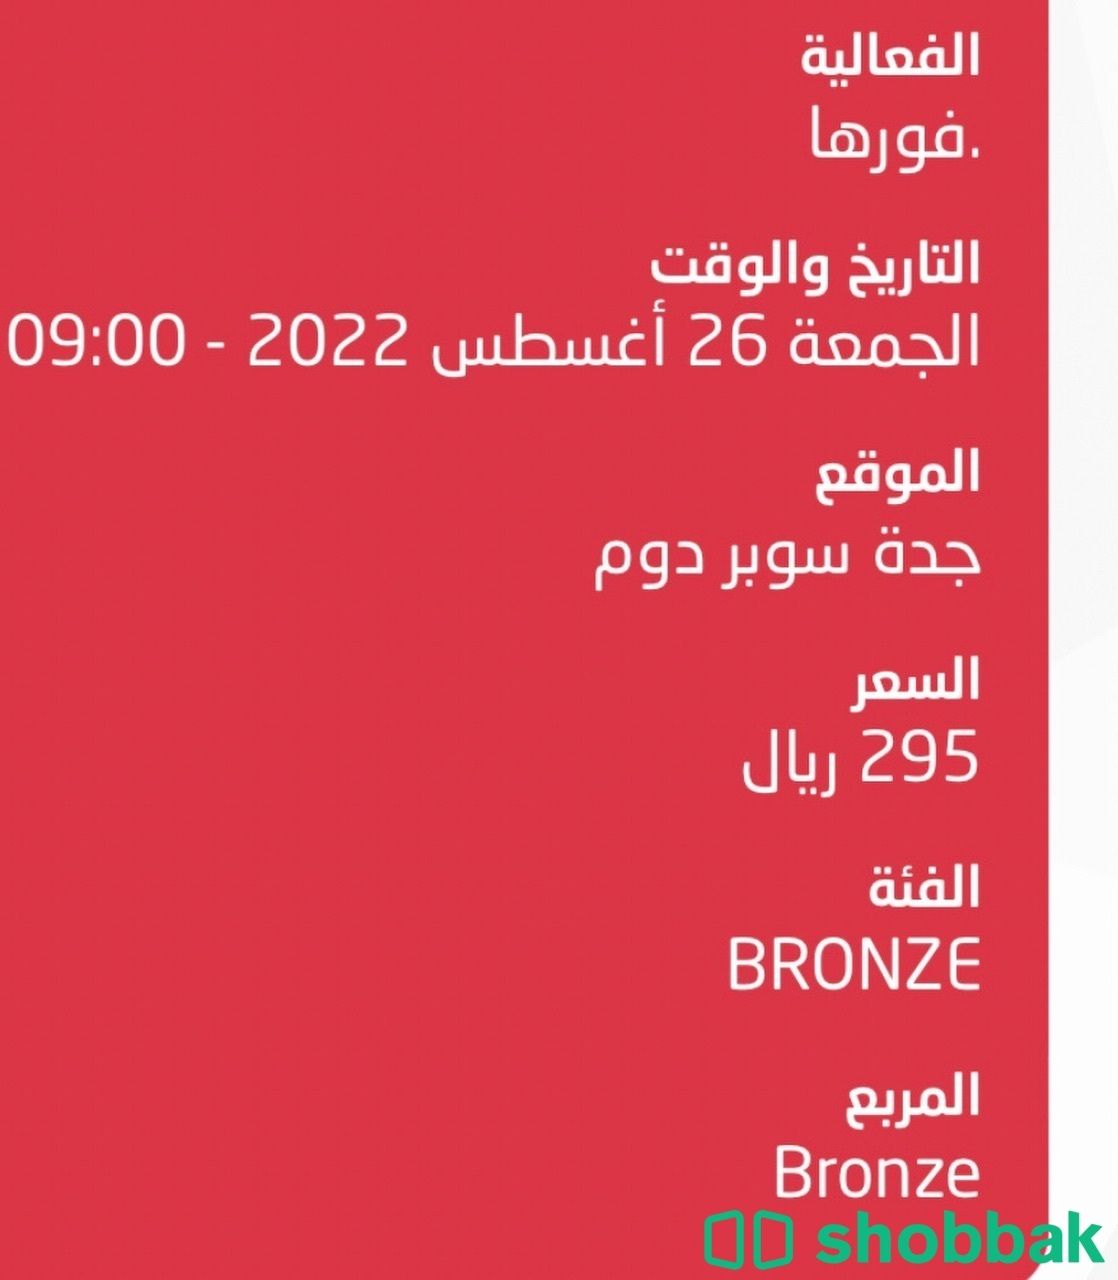 تذكرتين حفل تامر حسني في جدة Shobbak Saudi Arabia